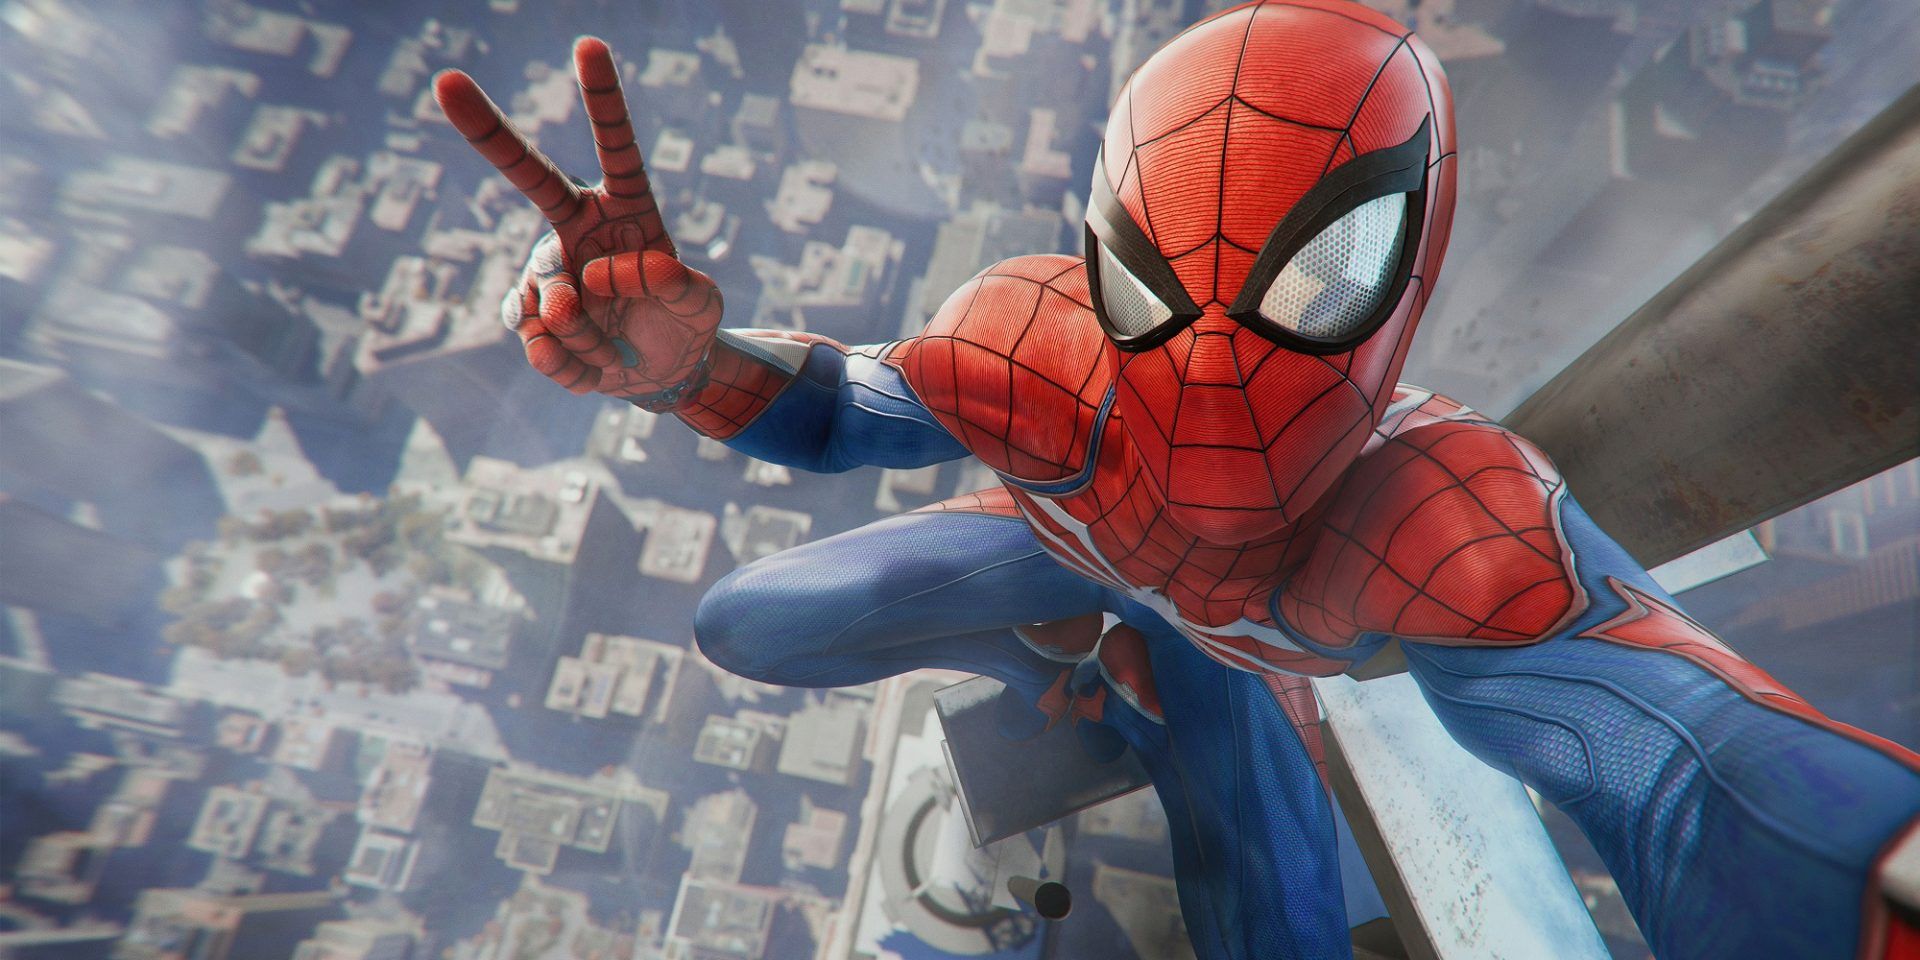 Spider-Man Selfie Of Marvel's Spider-Man